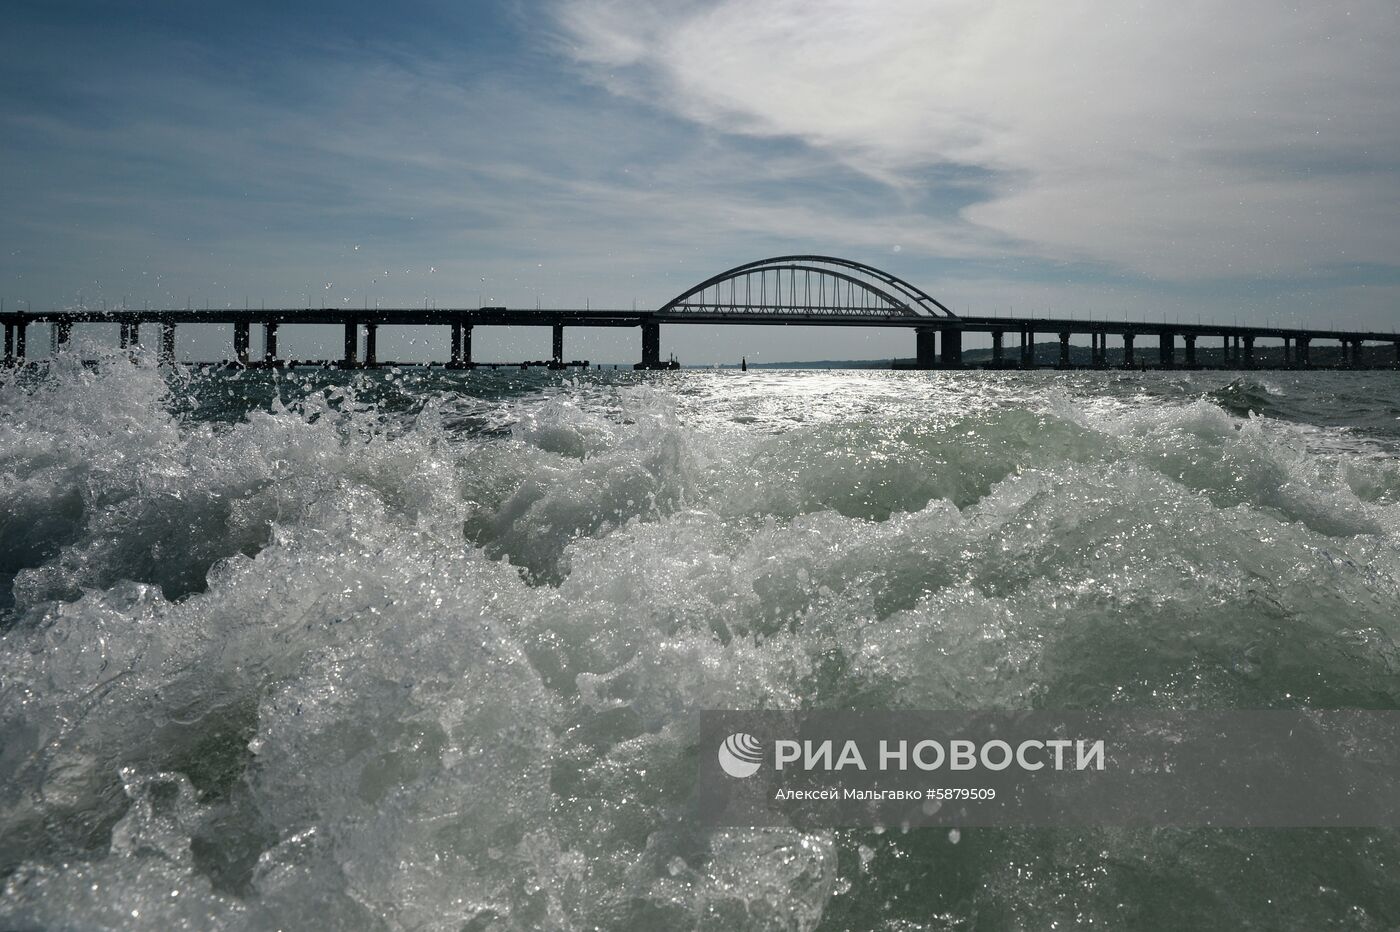 Работа береговой охраны пограничной службы ФСБ РФ в Керченском проливе